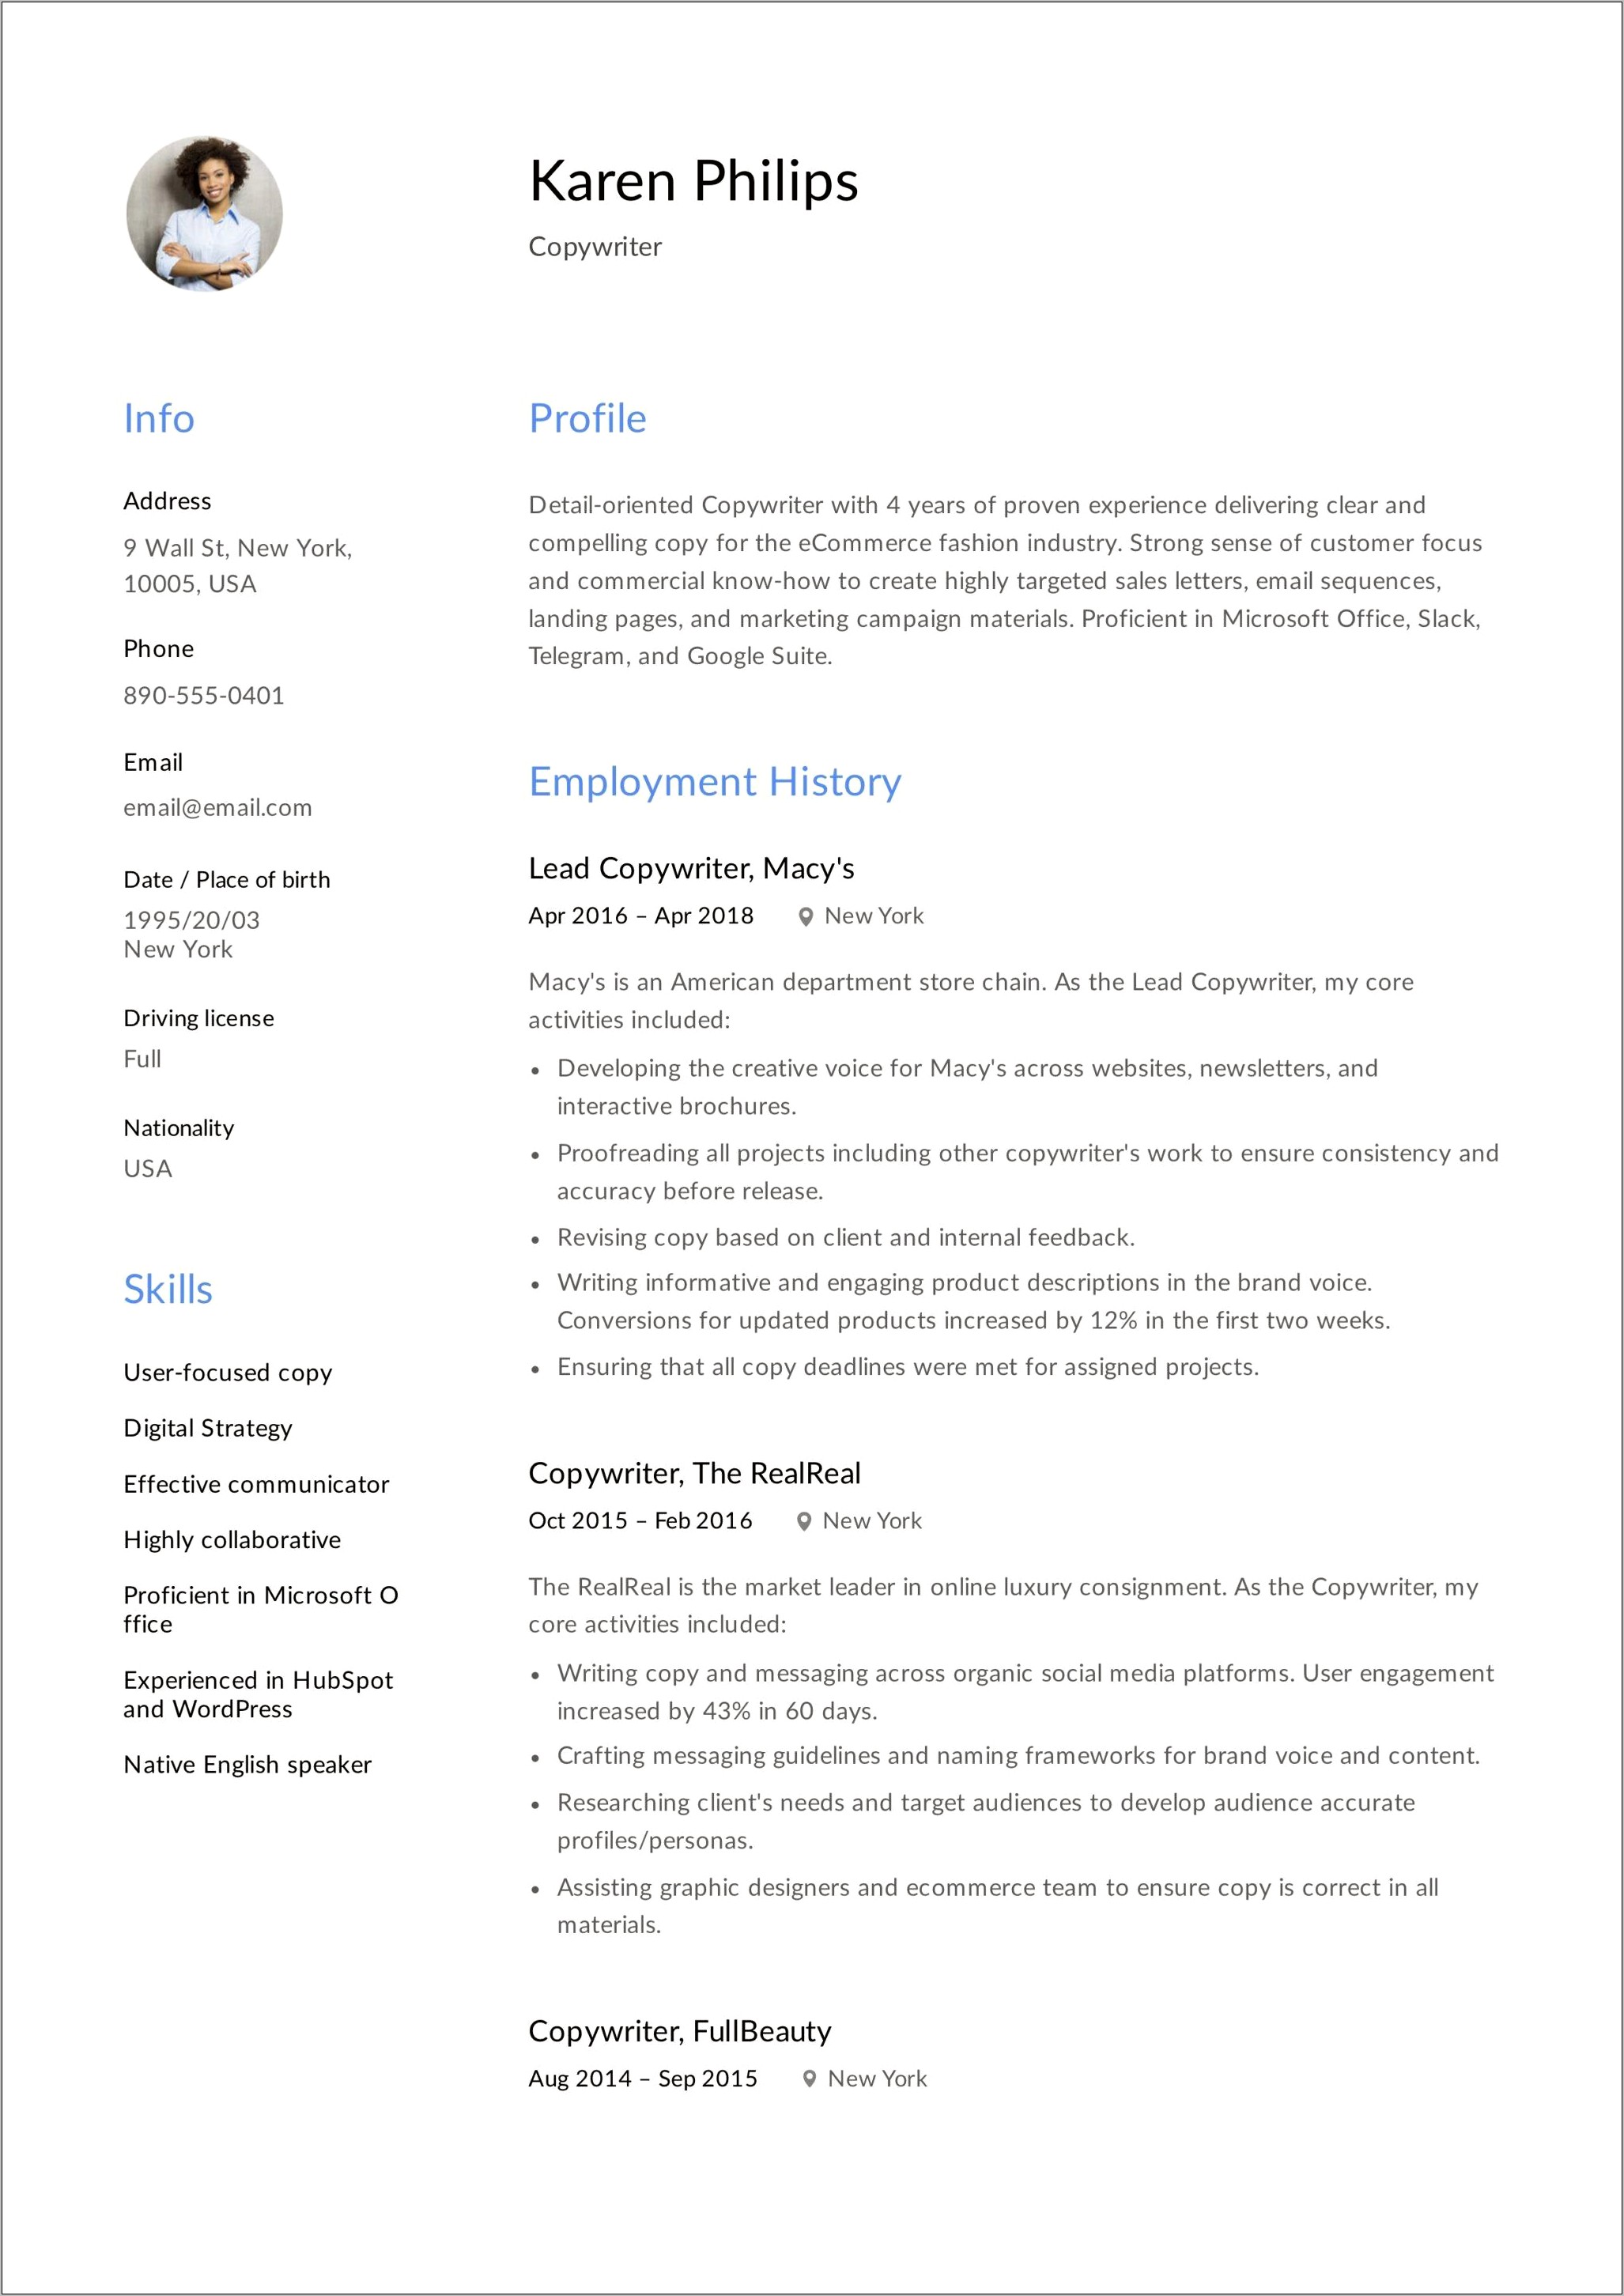 Sample Killer Summary Section For Resume For Copywriters